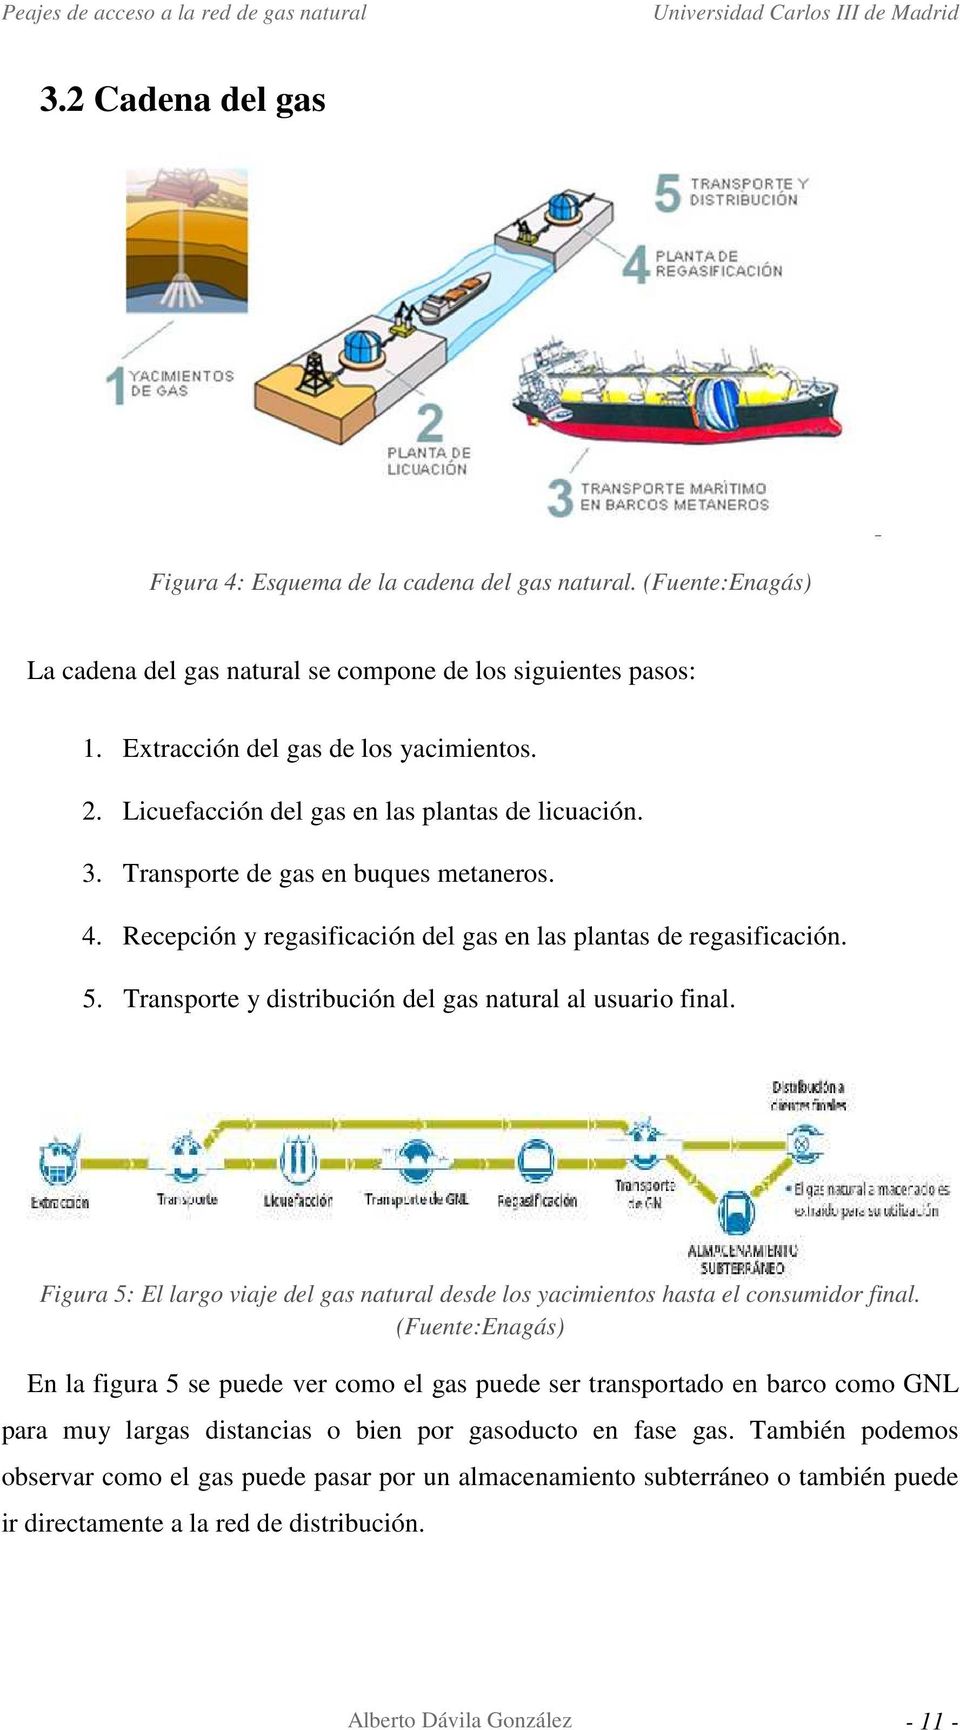 Transporte y distribución del gas natural al usuario final. Figura 5: El largo viaje del gas natural desde los yacimientos hasta el consumidor final.